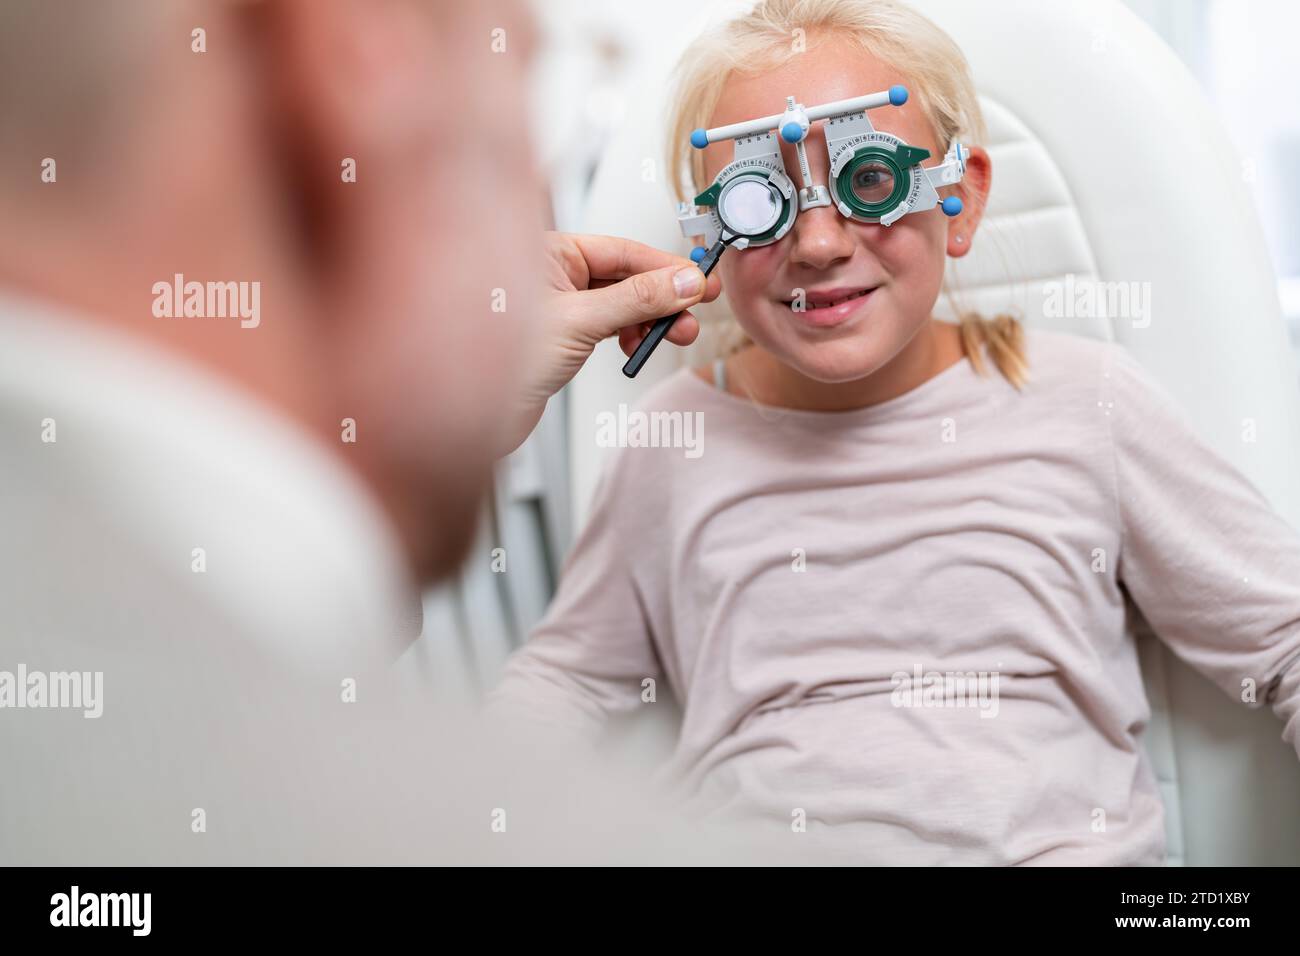 Jeune fille dans un test de la vue ou un examen de la vue par un médecin, optométriste ou ophtalmologue avec une aide médicale. Banque D'Images